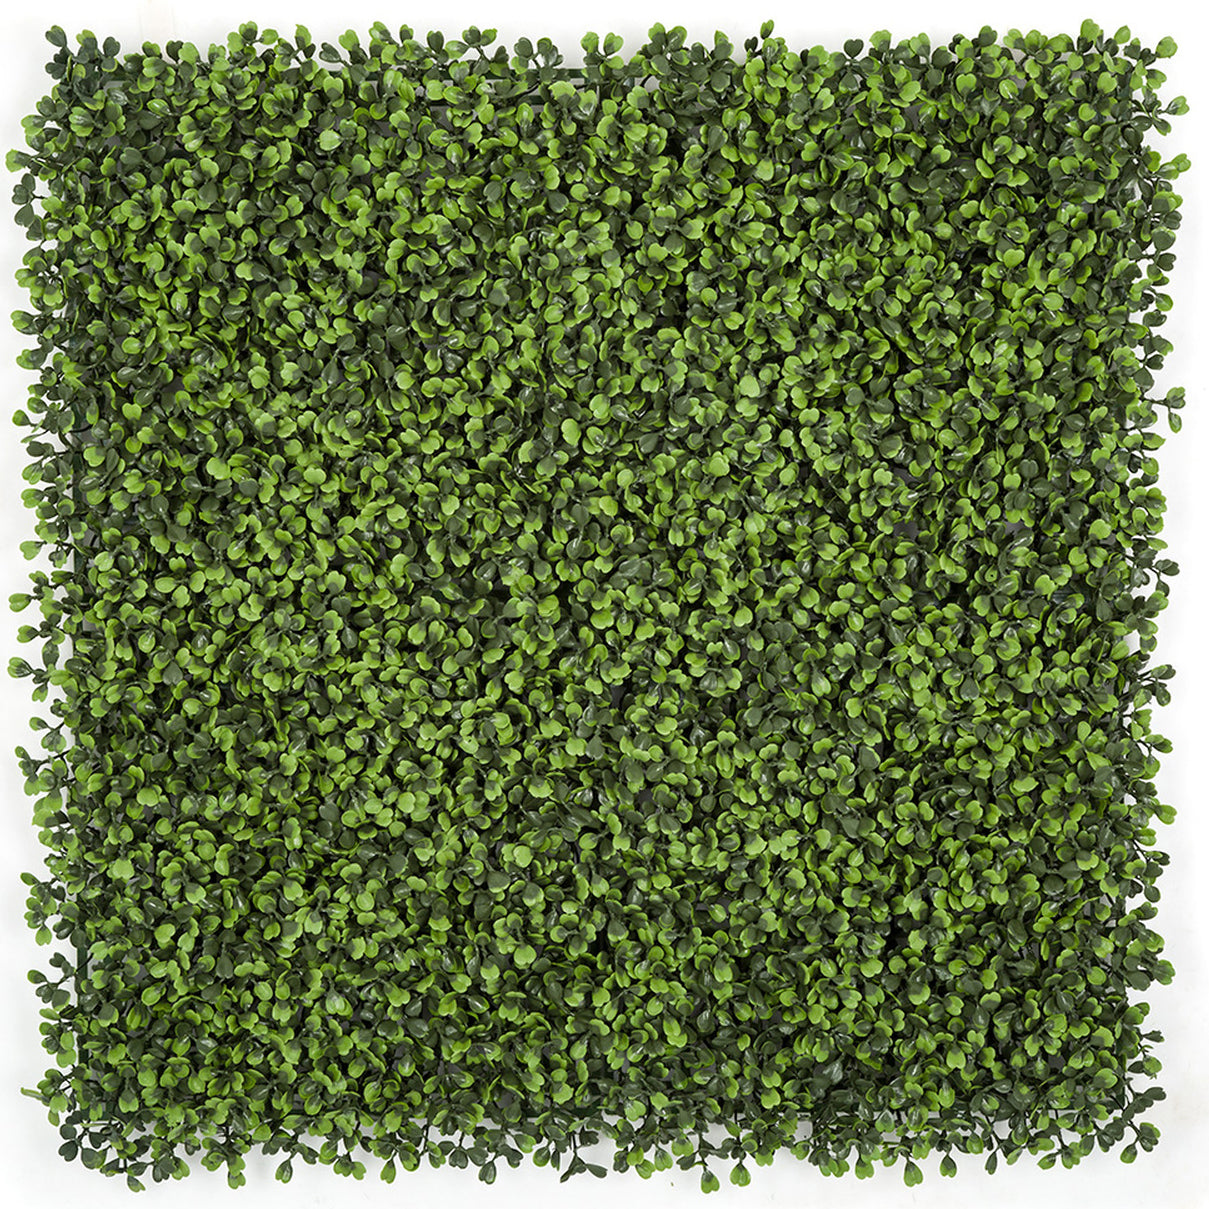 Grass & Decorative Living Wall Mats